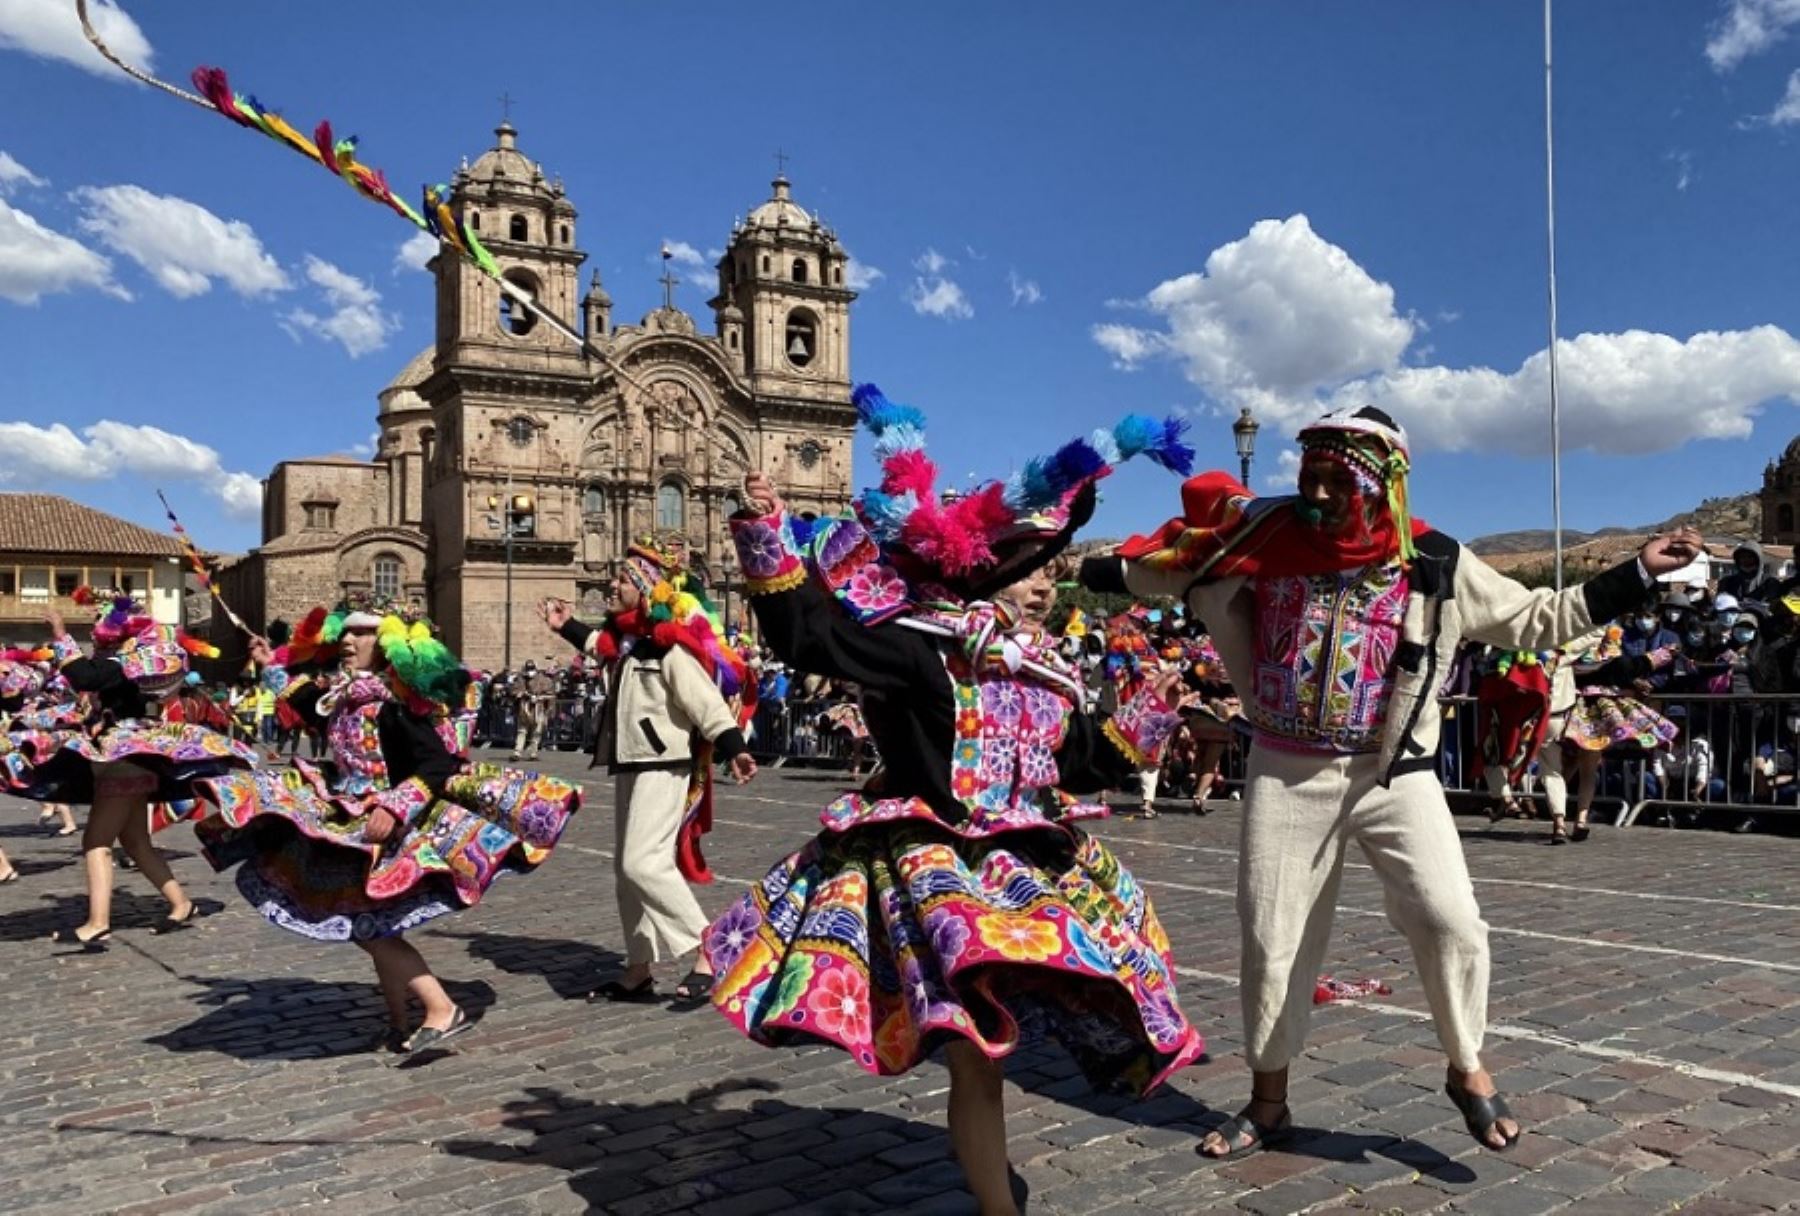 La irresistible seducción que genera la ciudad del Cusco vuelve a ser motivo para que la prestigiosa publicación internacional National Geographic la elija como uno de los lugares históricos de Latinoamérica que deberían visitarse al menos una vez en la vida.